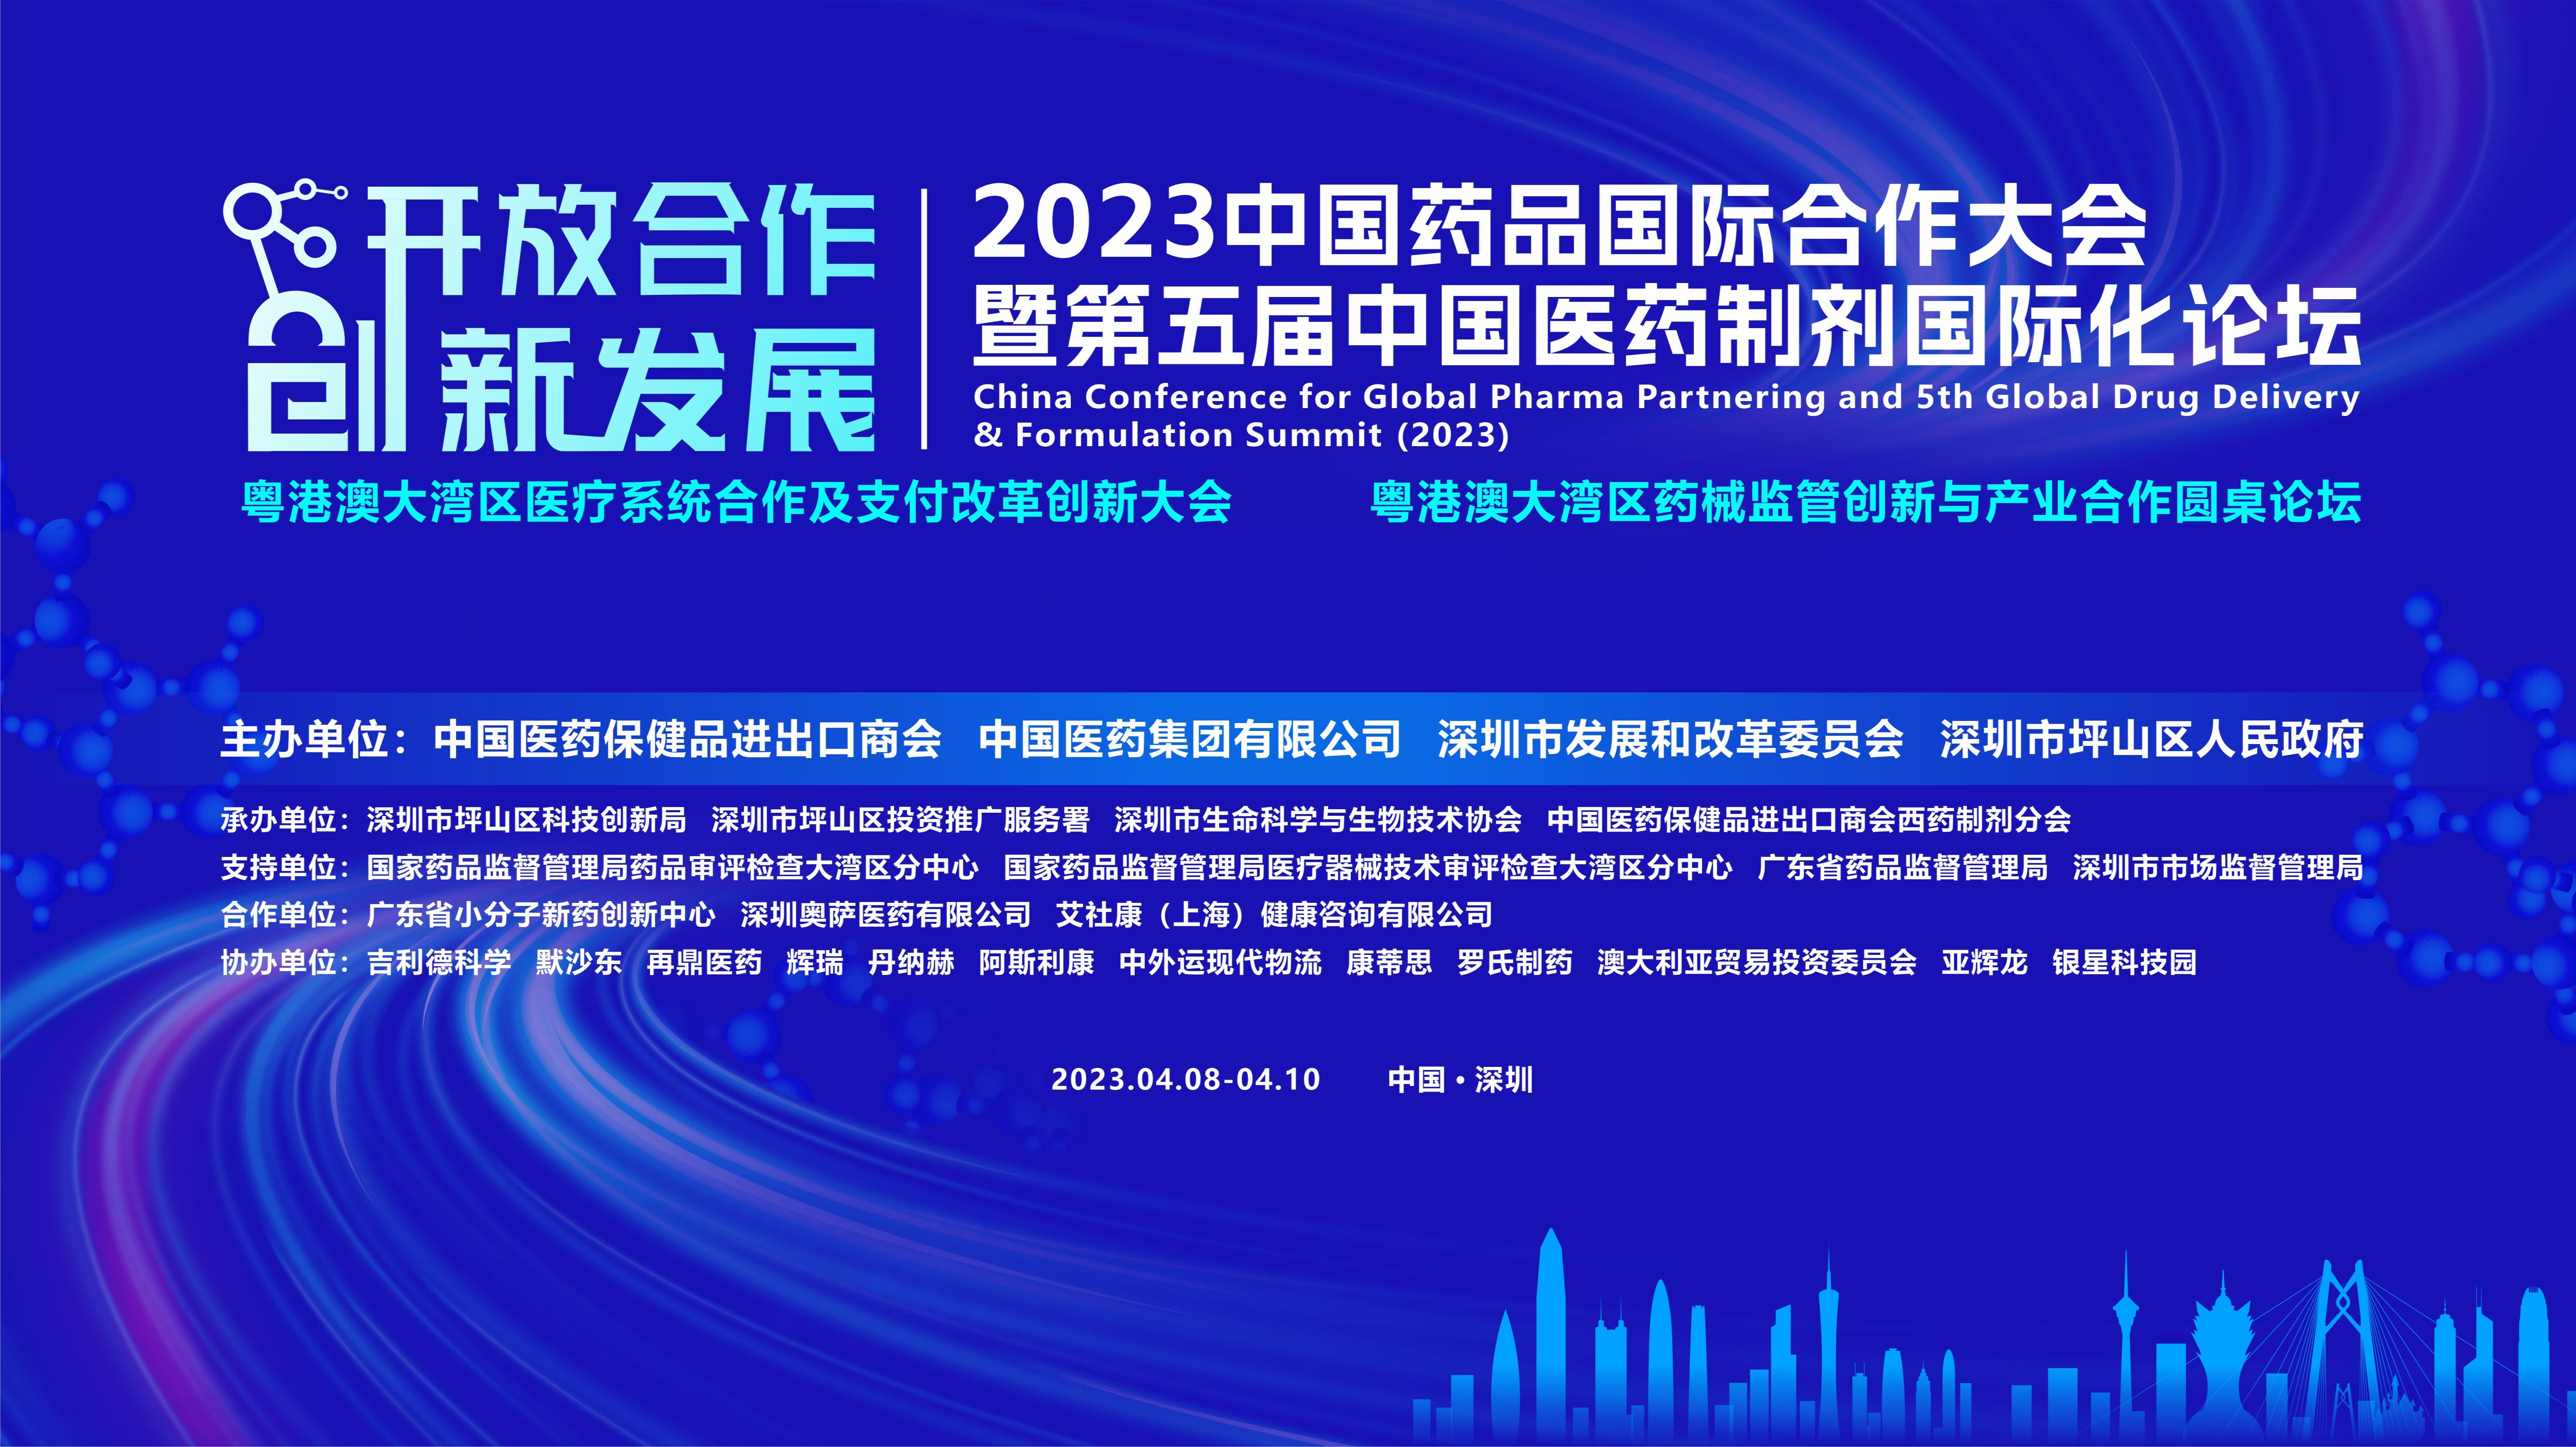 2023中国药品国际合作大会暨第五届中国医药制剂国际化论坛